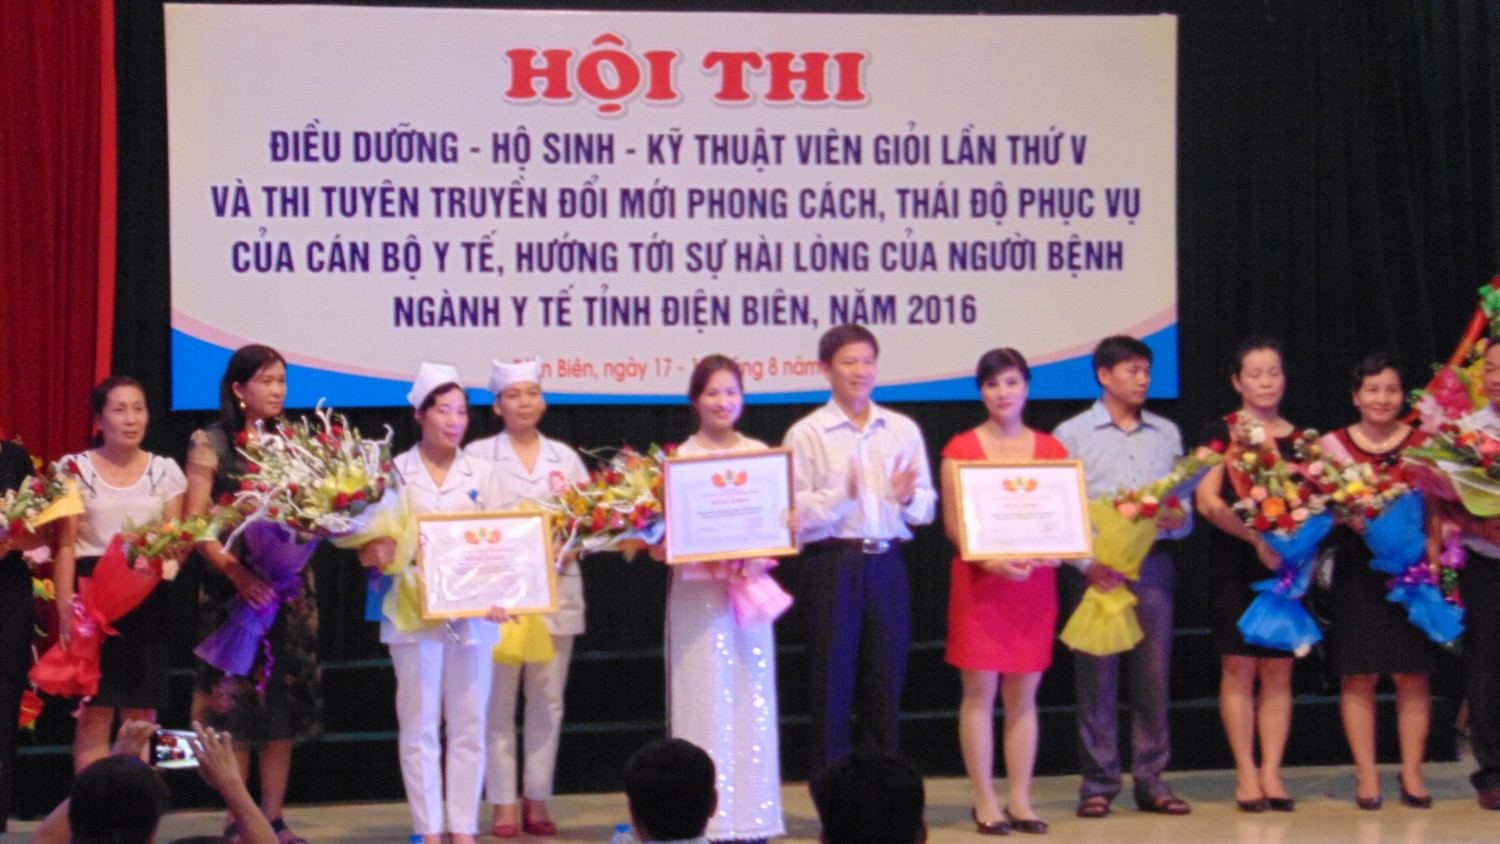 Đc Lê Thanh hà Phó Chủ tịch thường trực LĐLĐ tỉnh trao bằng khen cho các tập thể đạt giải cao Hội ThiTuyen truyền Đổi mới PCTĐPV